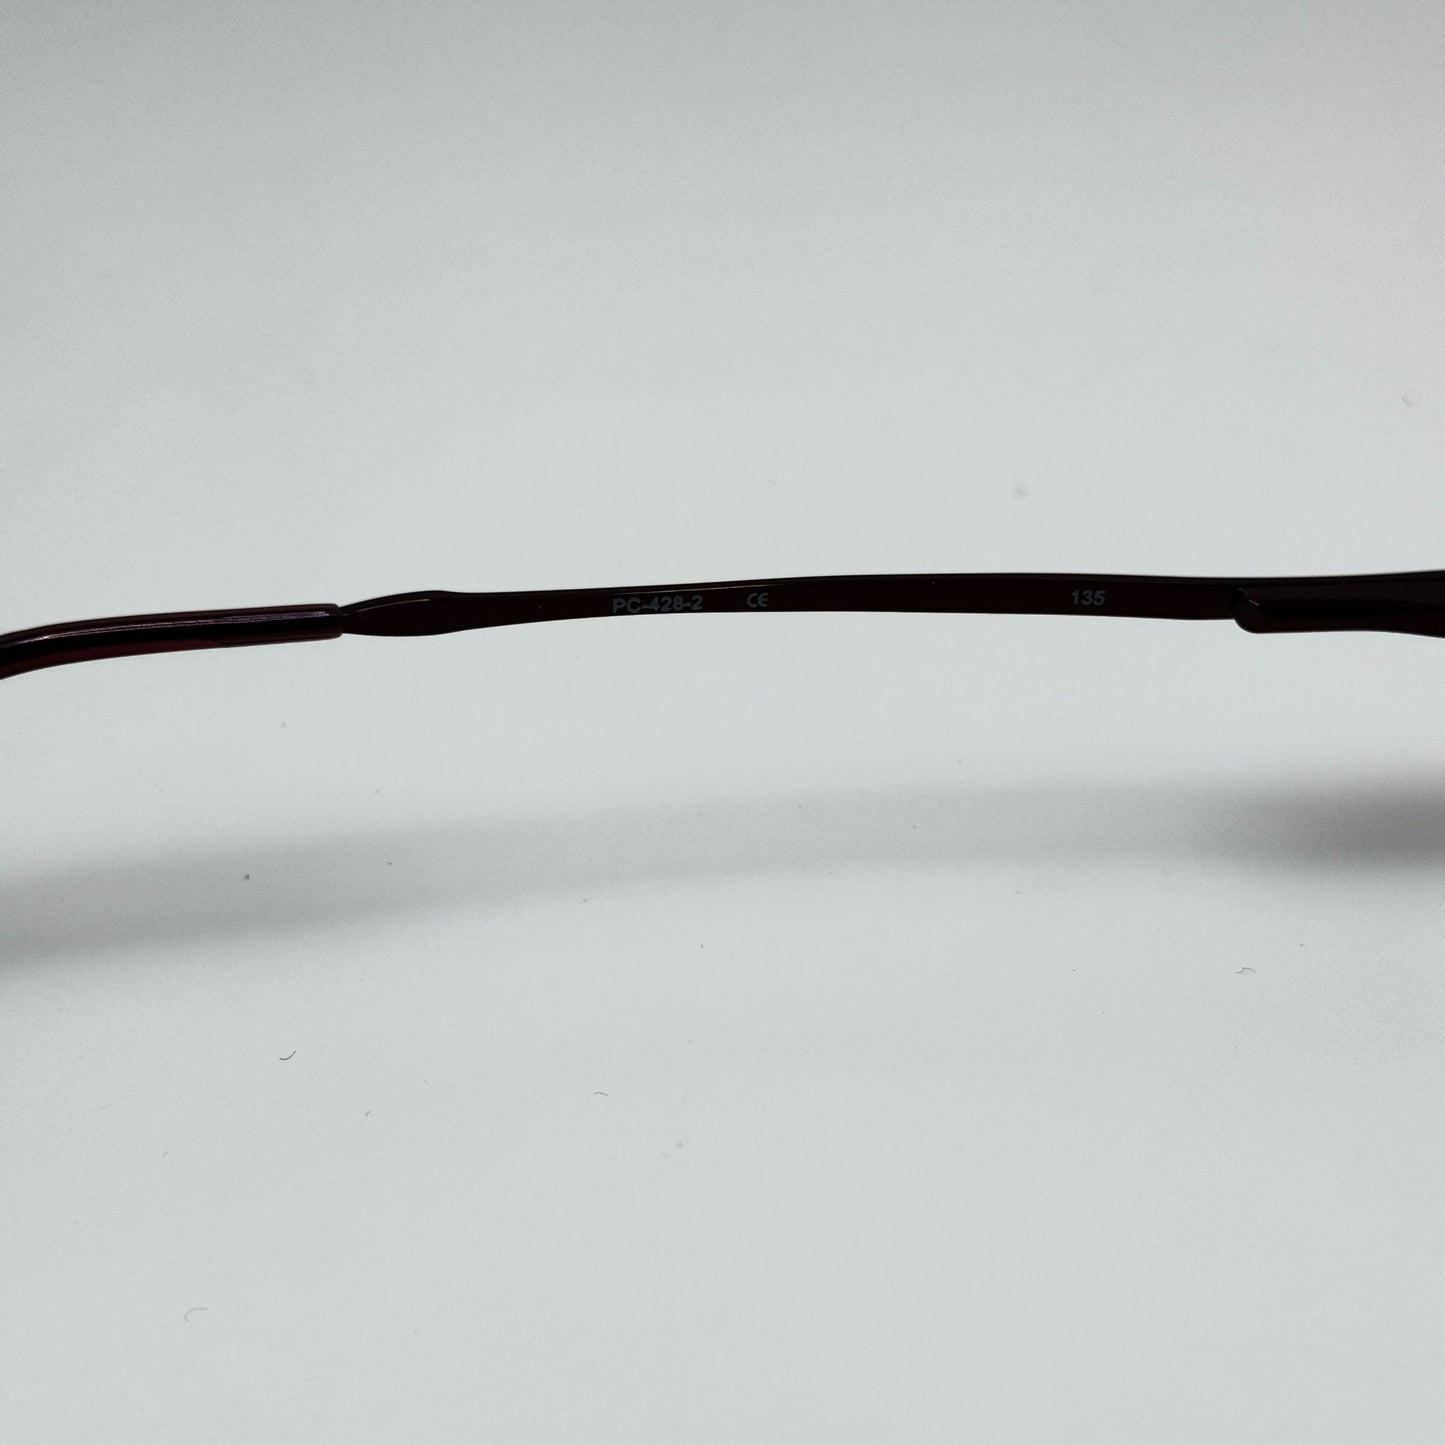 Pierre Cardin Eye Glasses Frames Eyeglasses PC-428-2 47-18-135